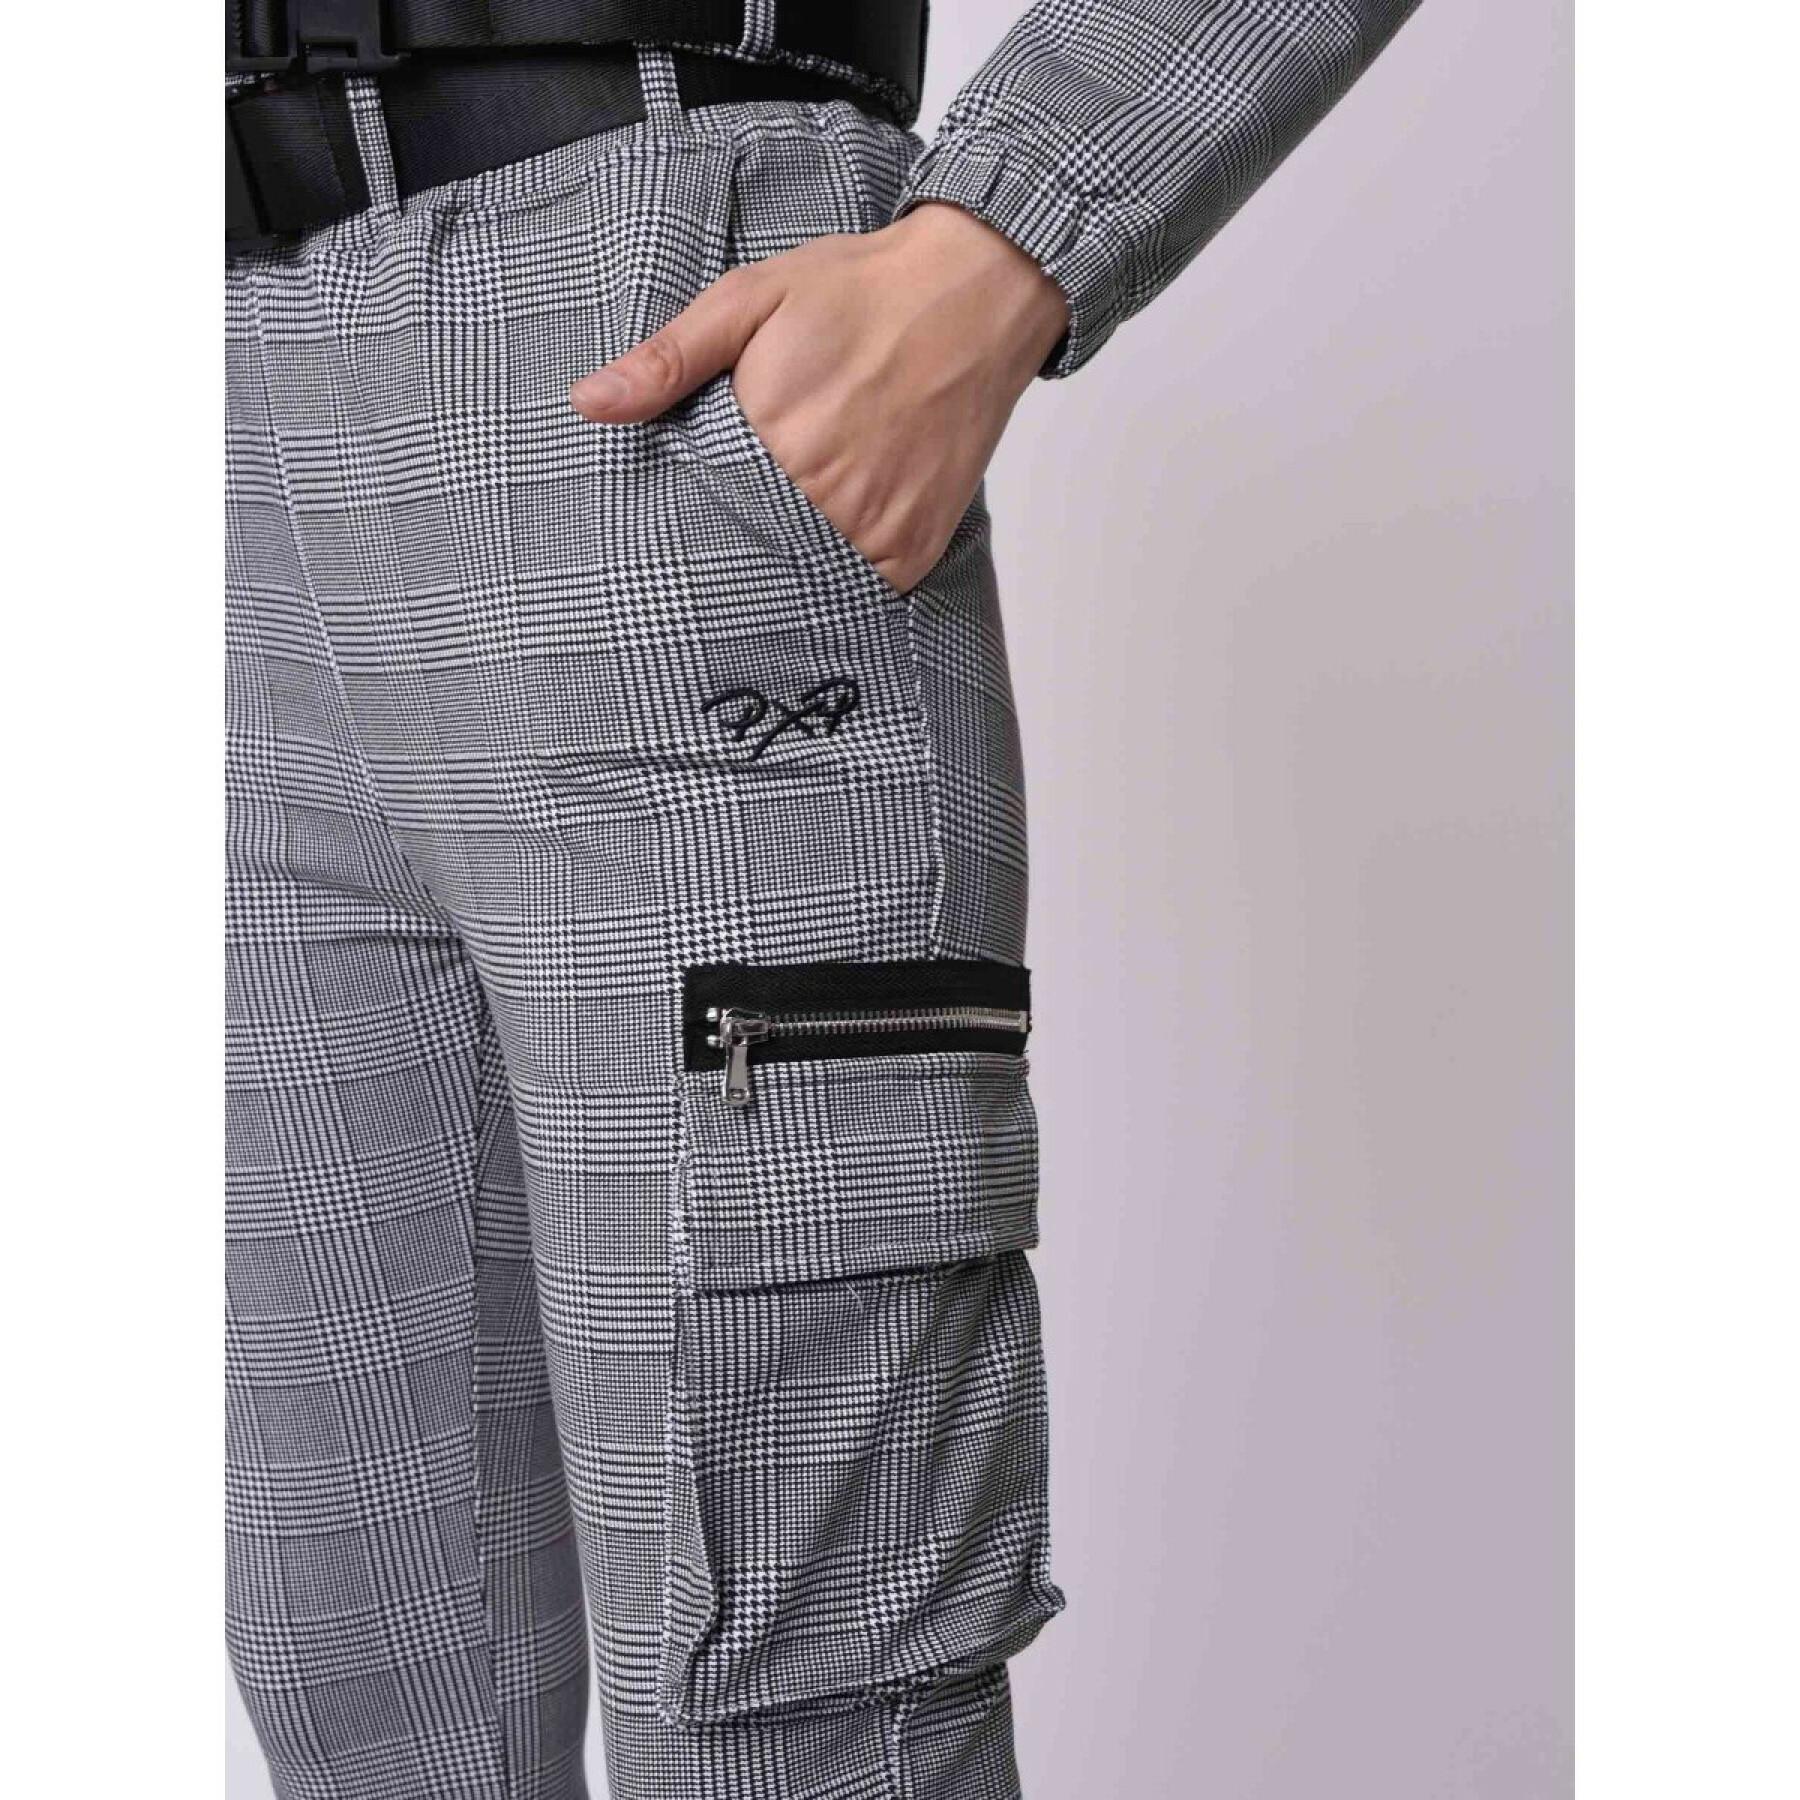 Women's plaid zipper pants Project X Paris